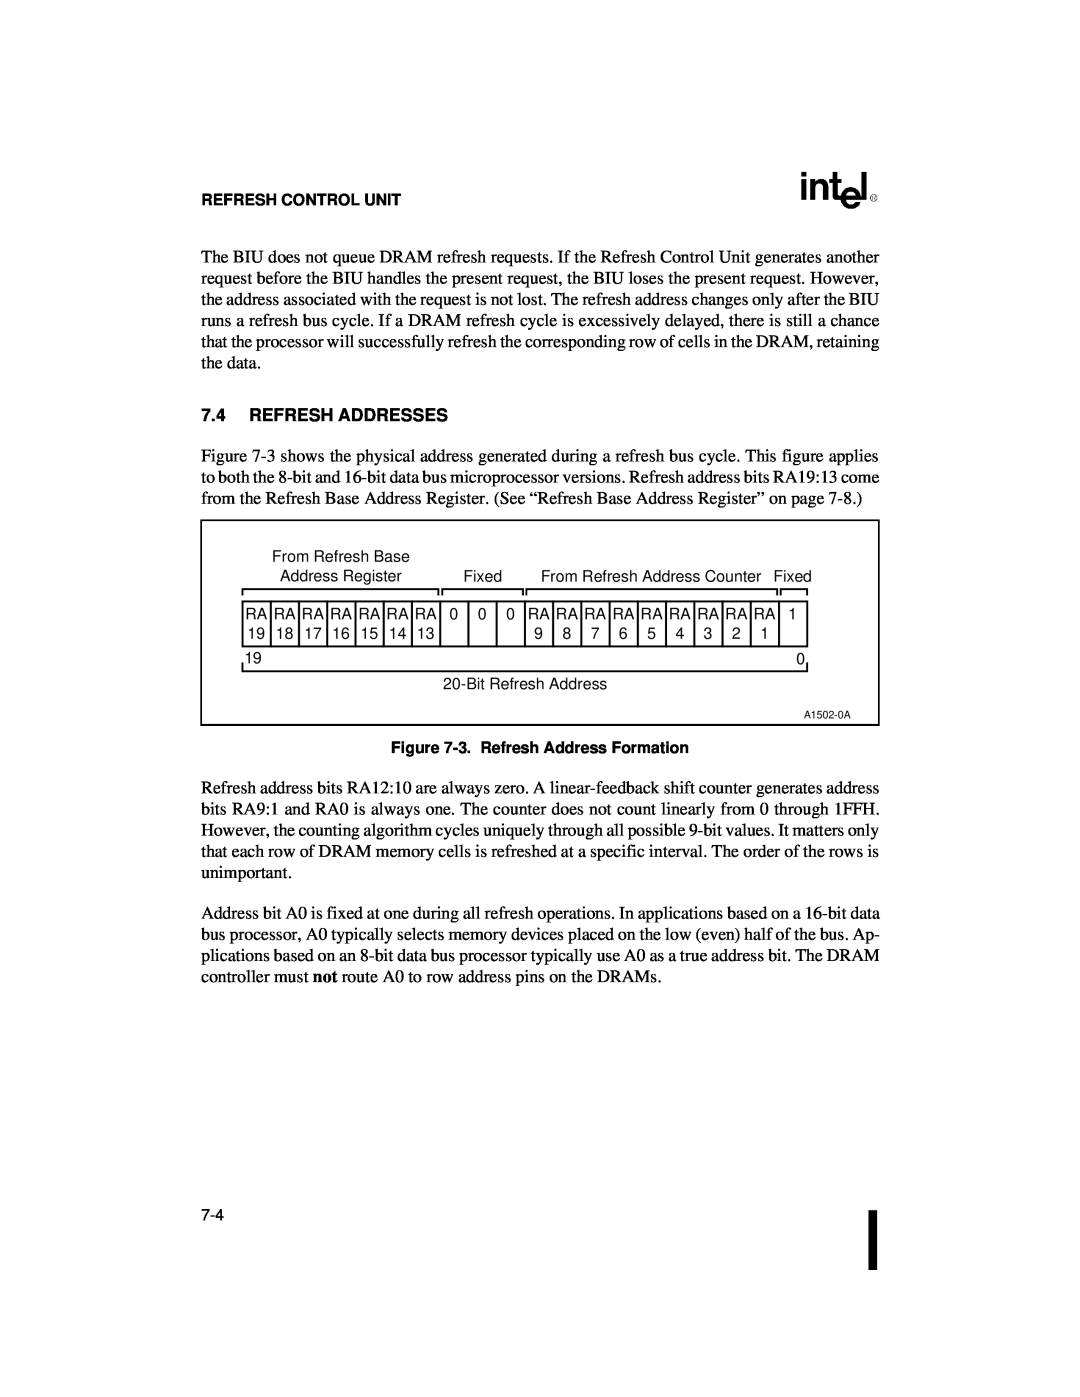 Intel 80C186XL, 80C188XL user manual 7.4REFRESH ADDRESSES, Refresh Control Unit, 3.Refresh Address Formation 